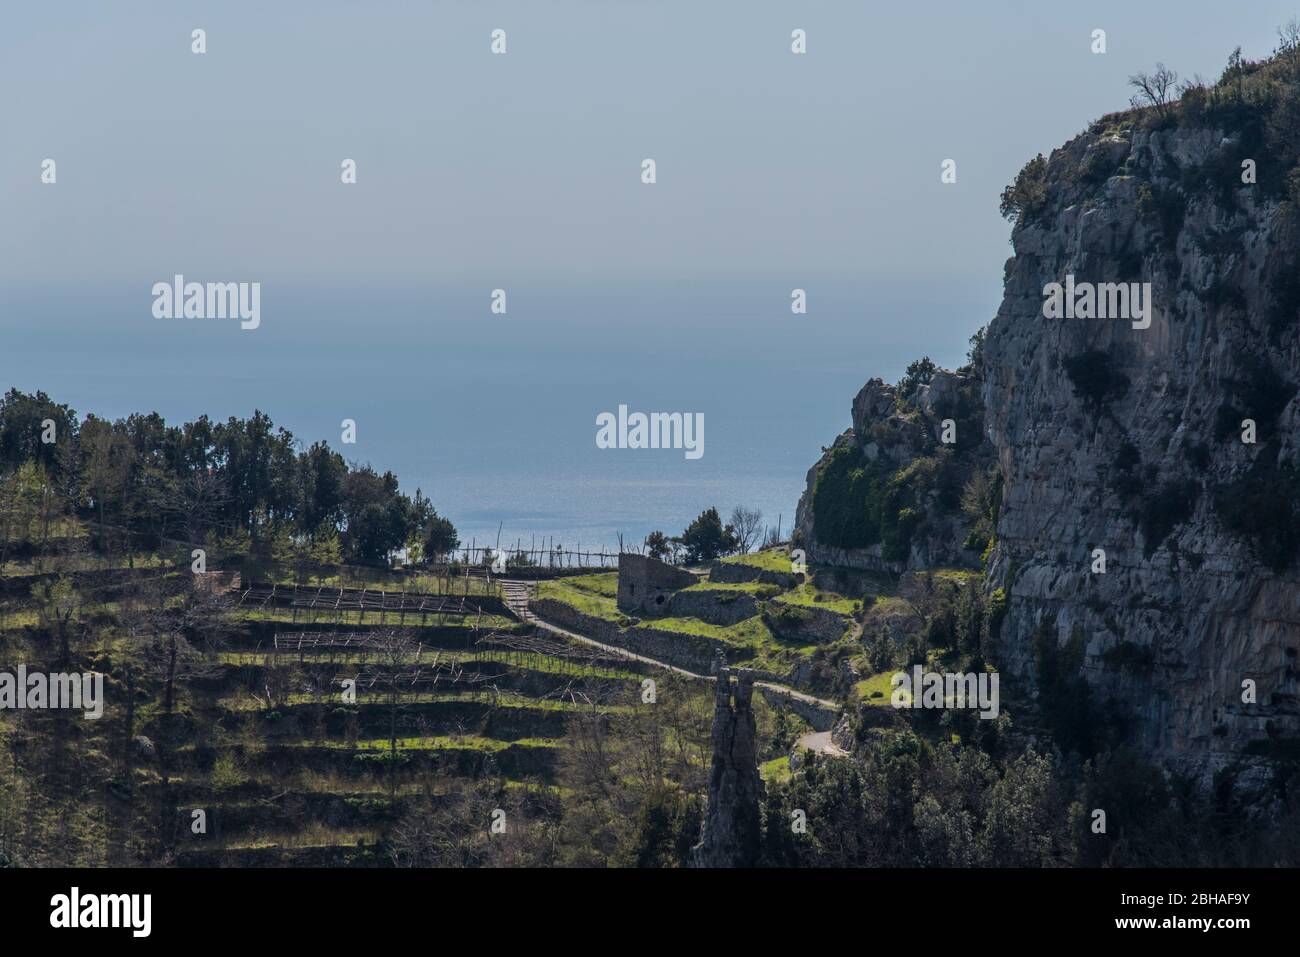 Der Weg der Götter: Sentiero degli Dei. Unglaublich schöner Wanderweg hoch über der Amalfitana oder Amalfi Küste in Italien, von Agerola nach Positano. März 2019. Landwirtschaft in Terrassenform Stockfoto